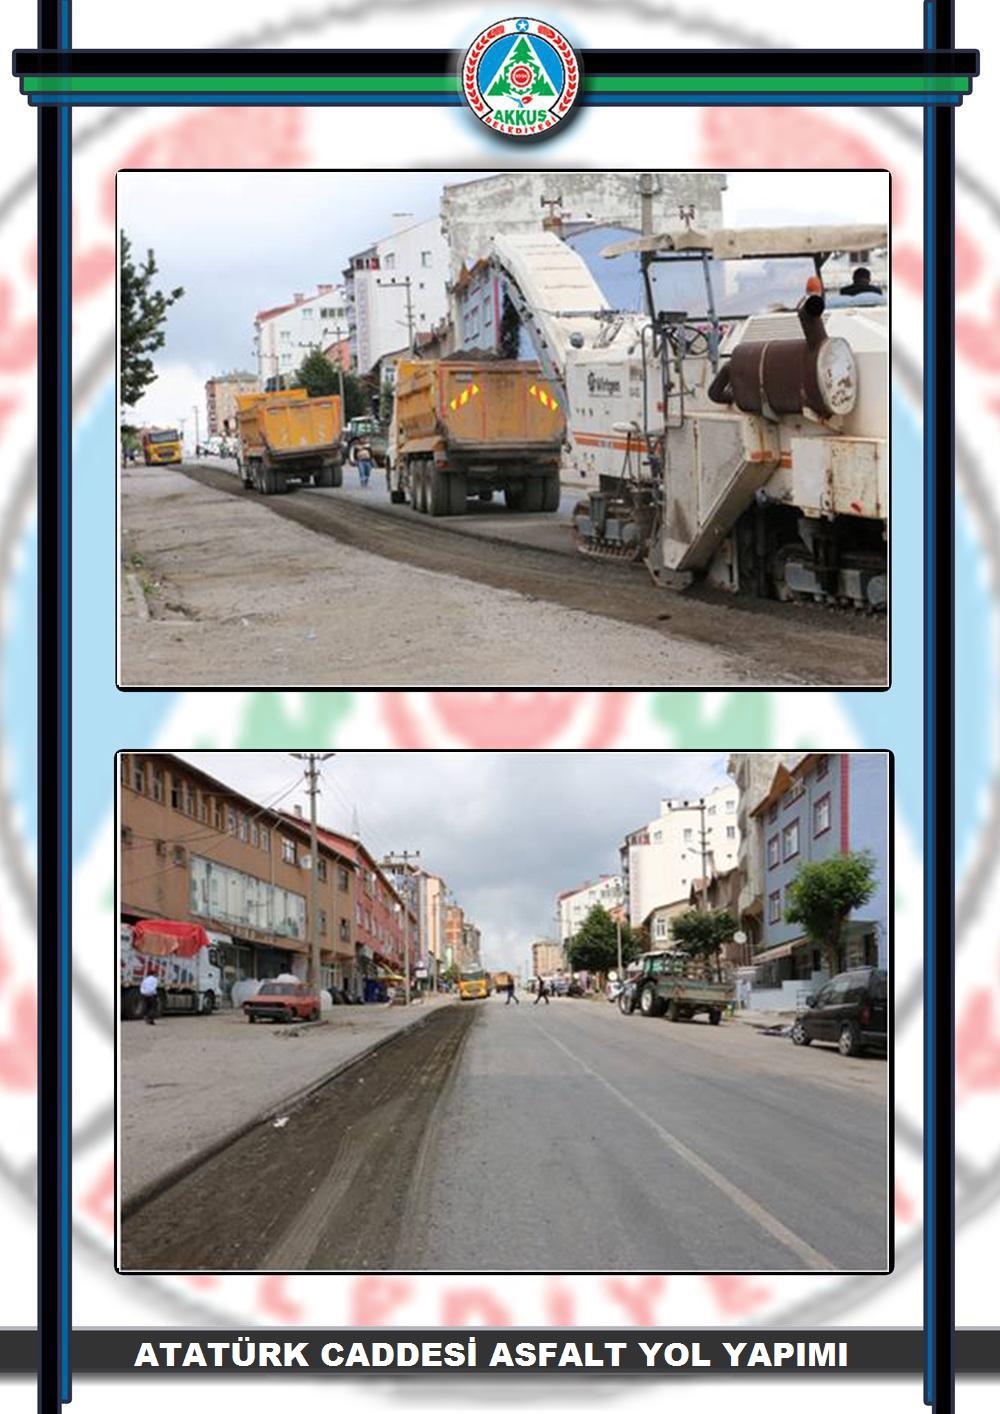 Atatürk Caddesi Asfalt Yol Yapımı